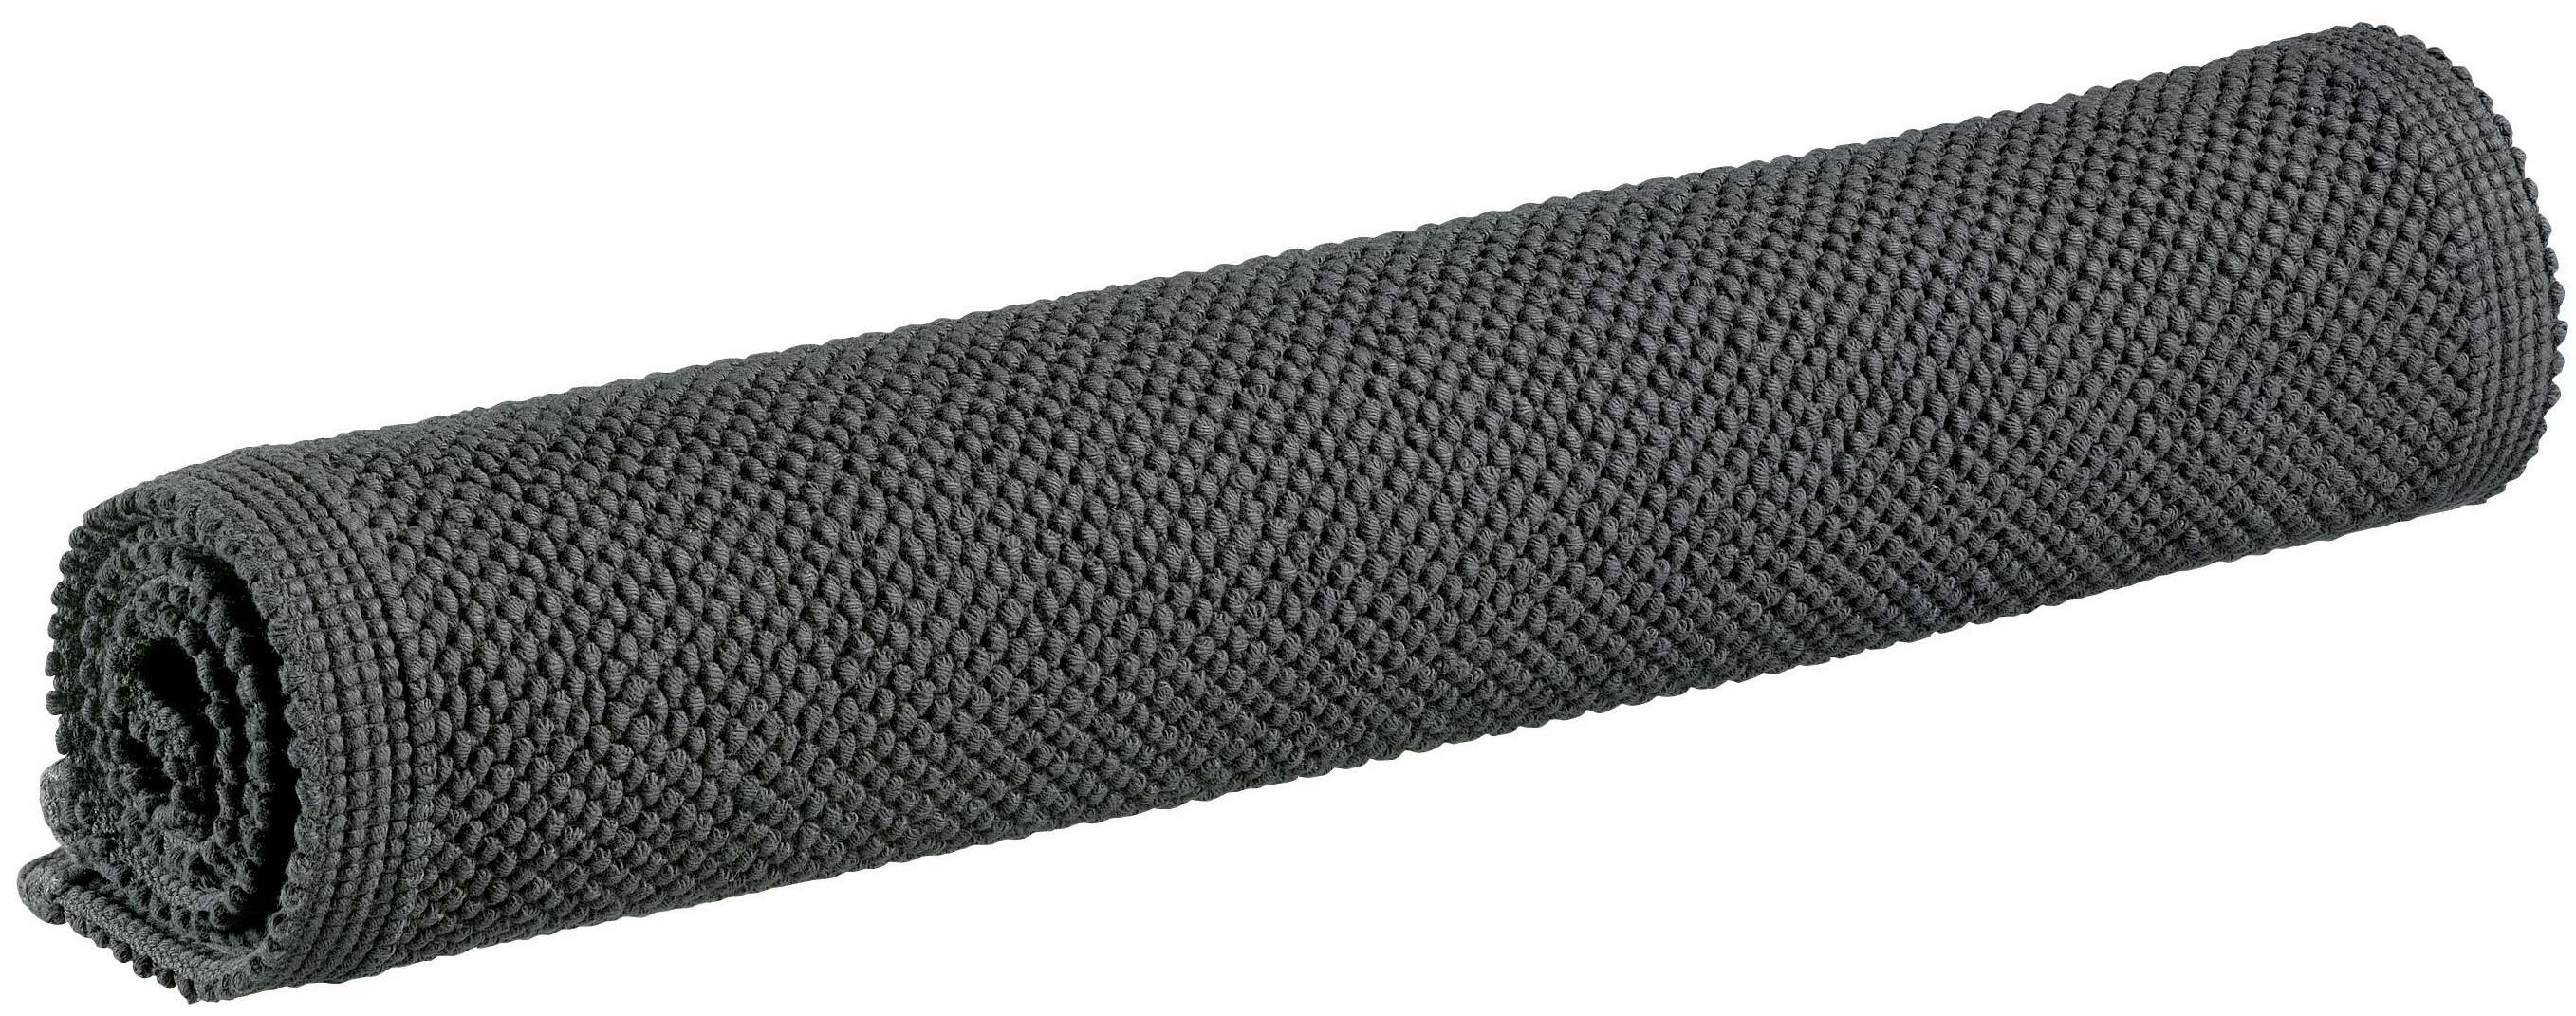 VIVARAISE - Badematte Etia 54x110cm, carbone